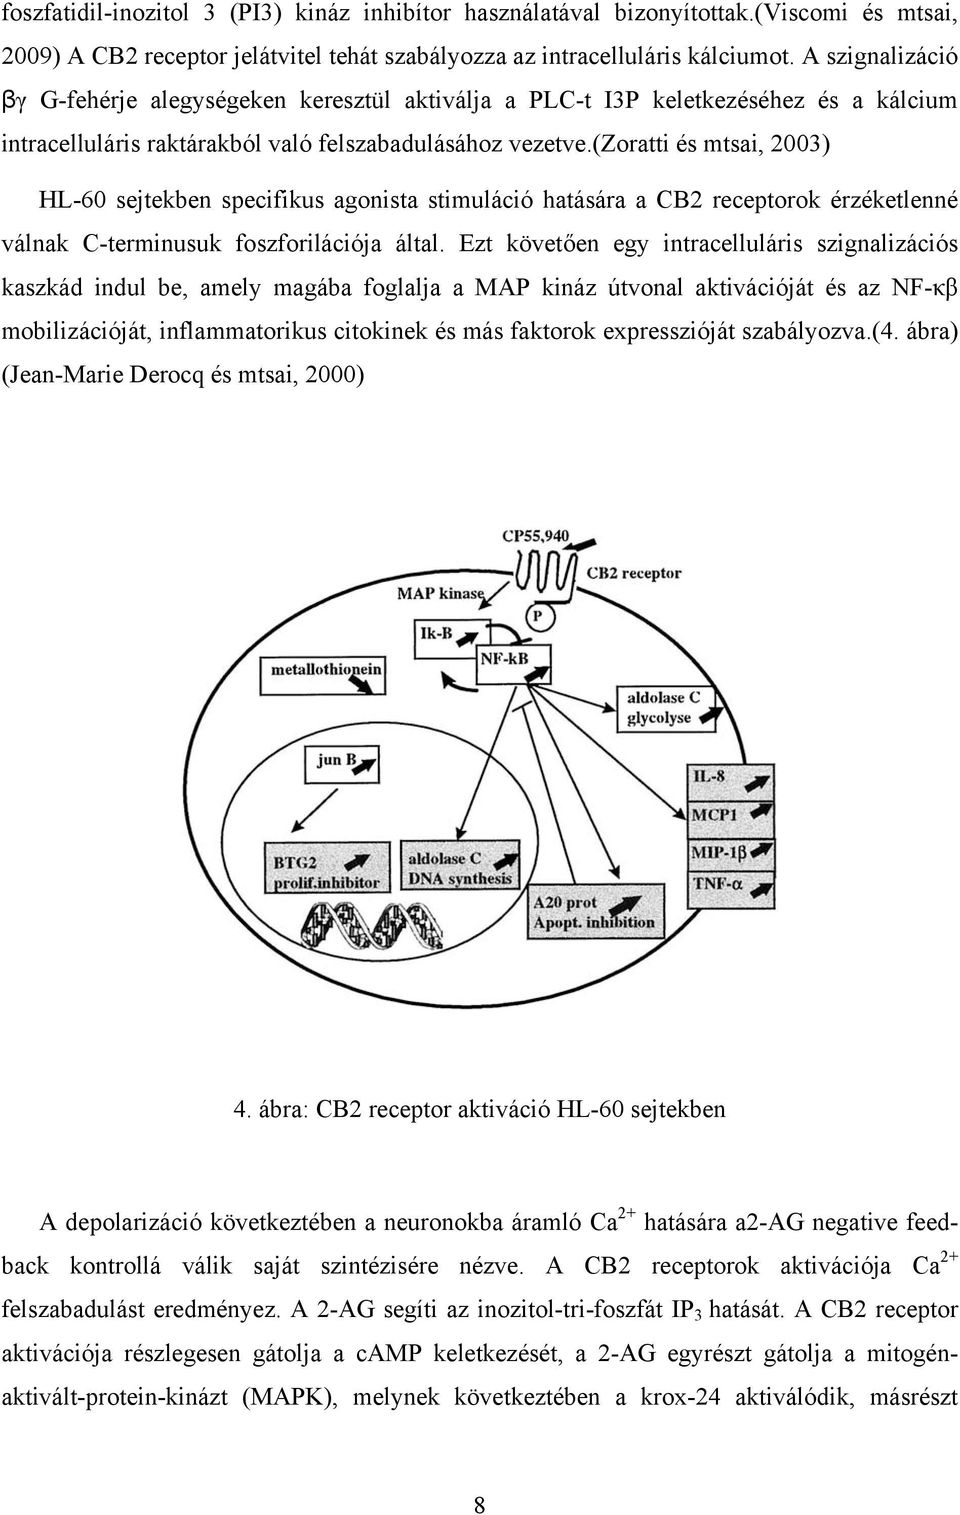 (zoratti és mtsai, 2003) HL-60 sejtekben specifikus agonista stimuláció hatására a CB2 receptorok érzéketlenné válnak C-terminusuk foszforilációja által.